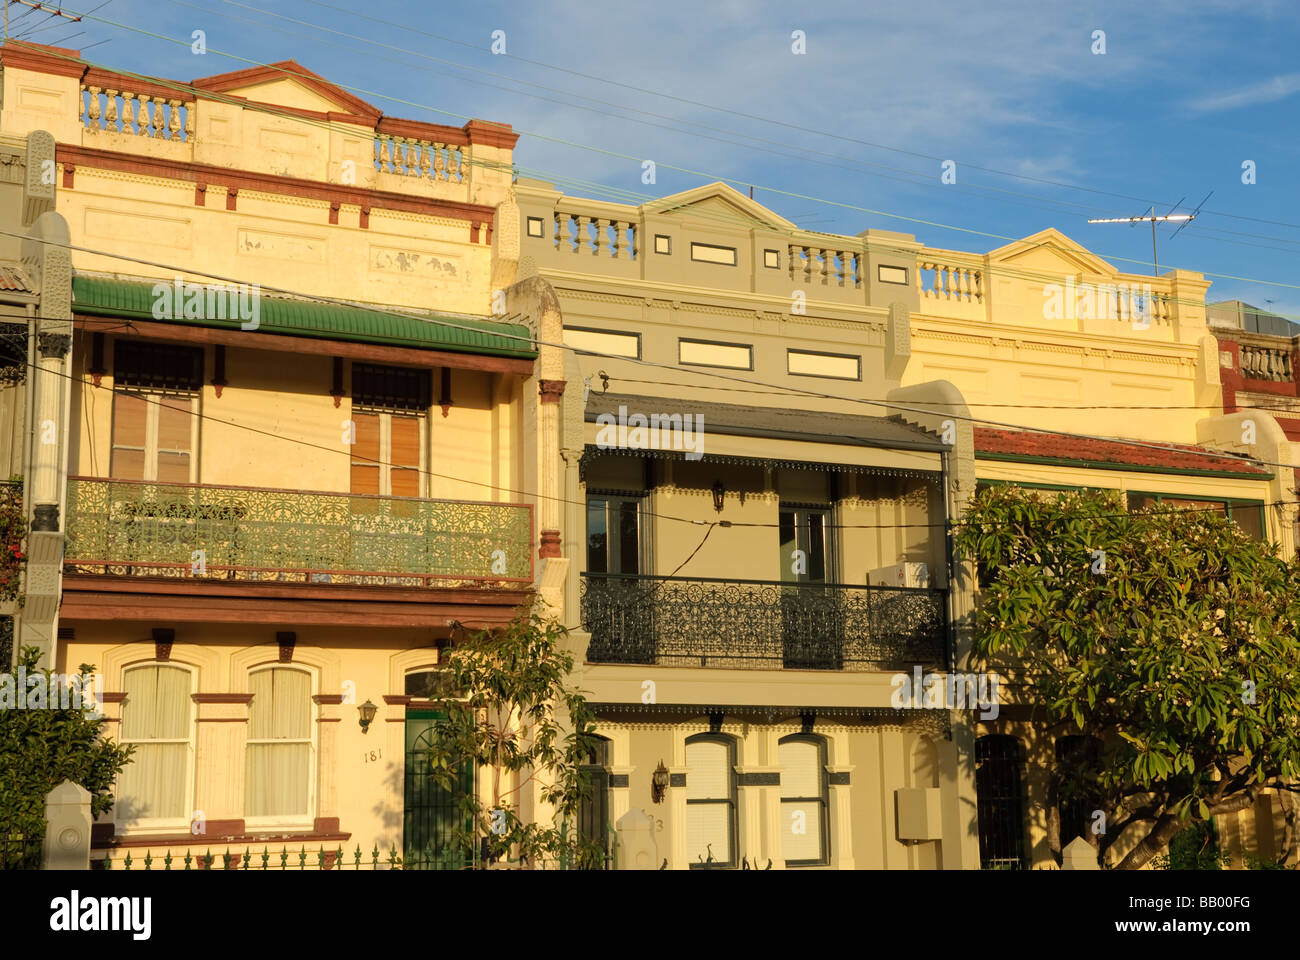 Case terrazza dall'era vittoriana tipica della città interna nei sobborghi di Sydney. Questi sono nel sobborgo di Redfern. Foto Stock